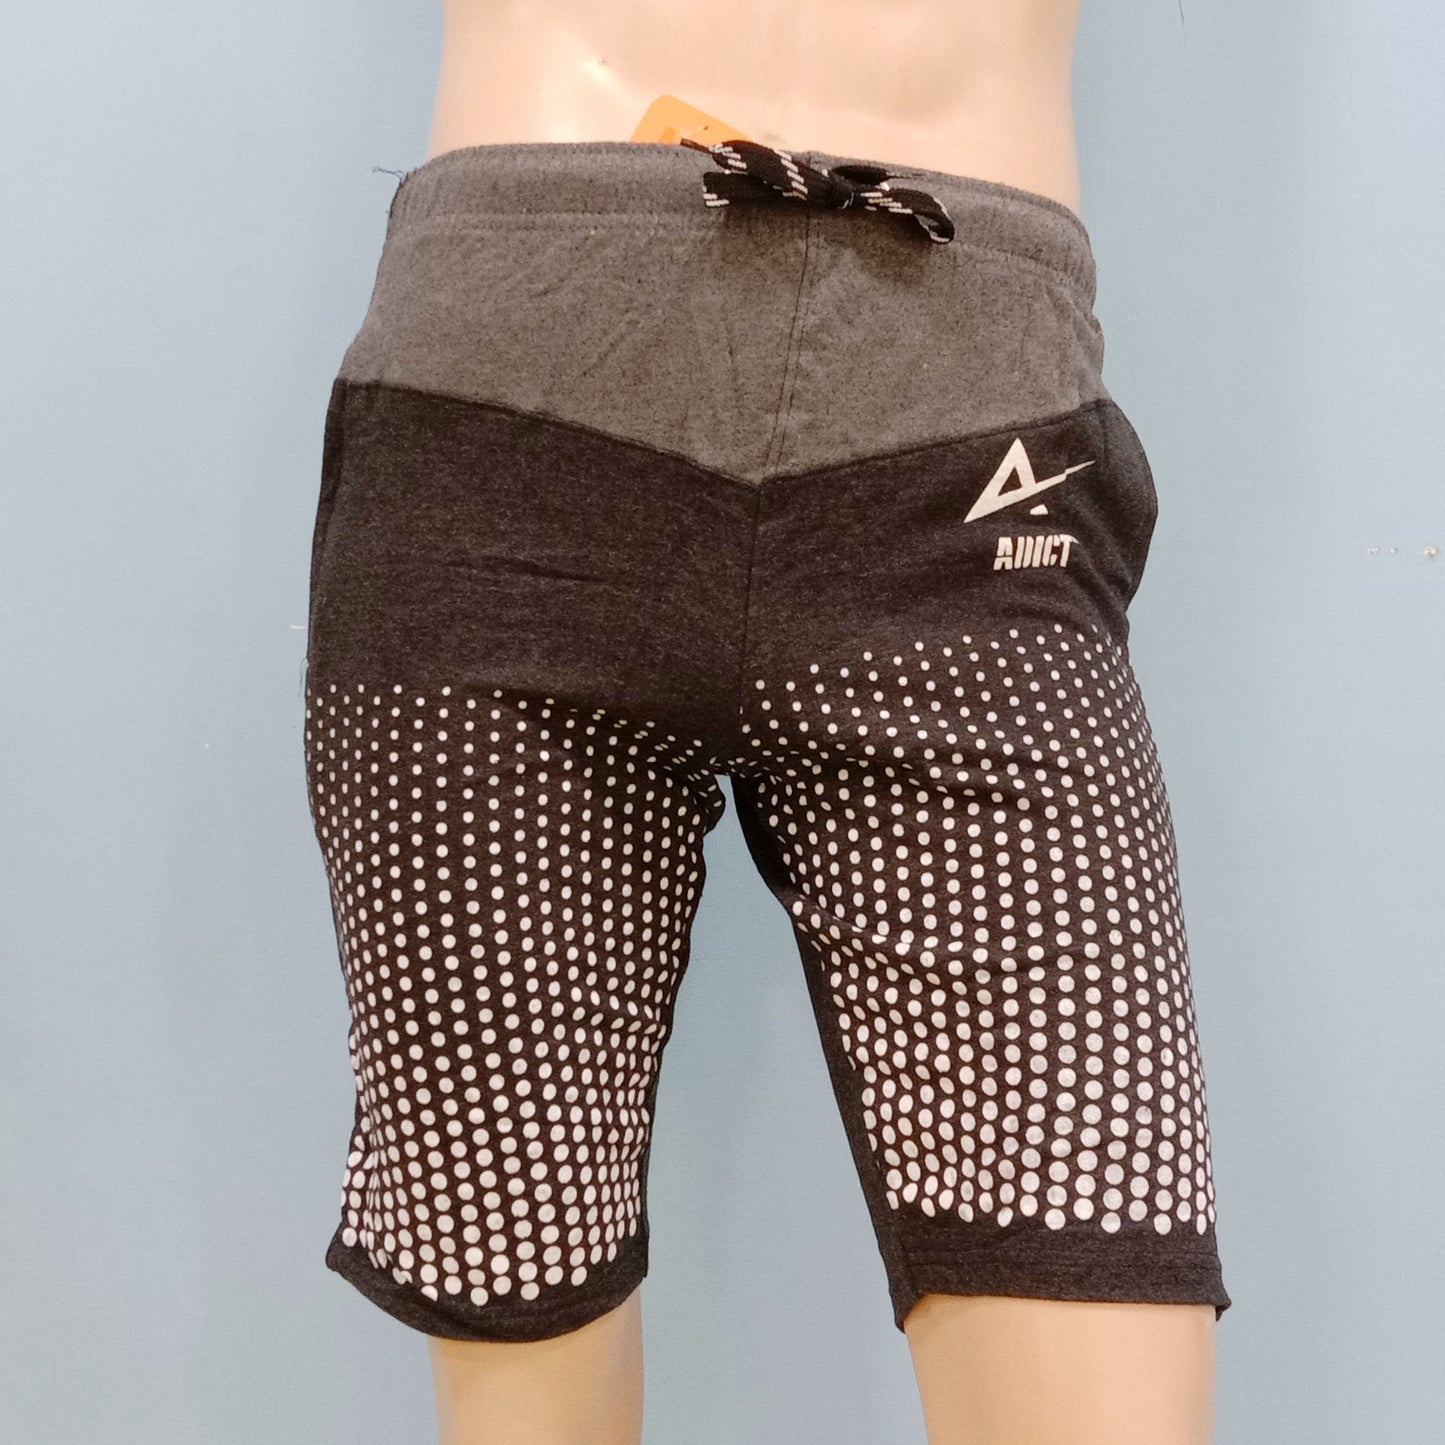 Super Branded Design Shorts for Men - 4 Designs - DS1